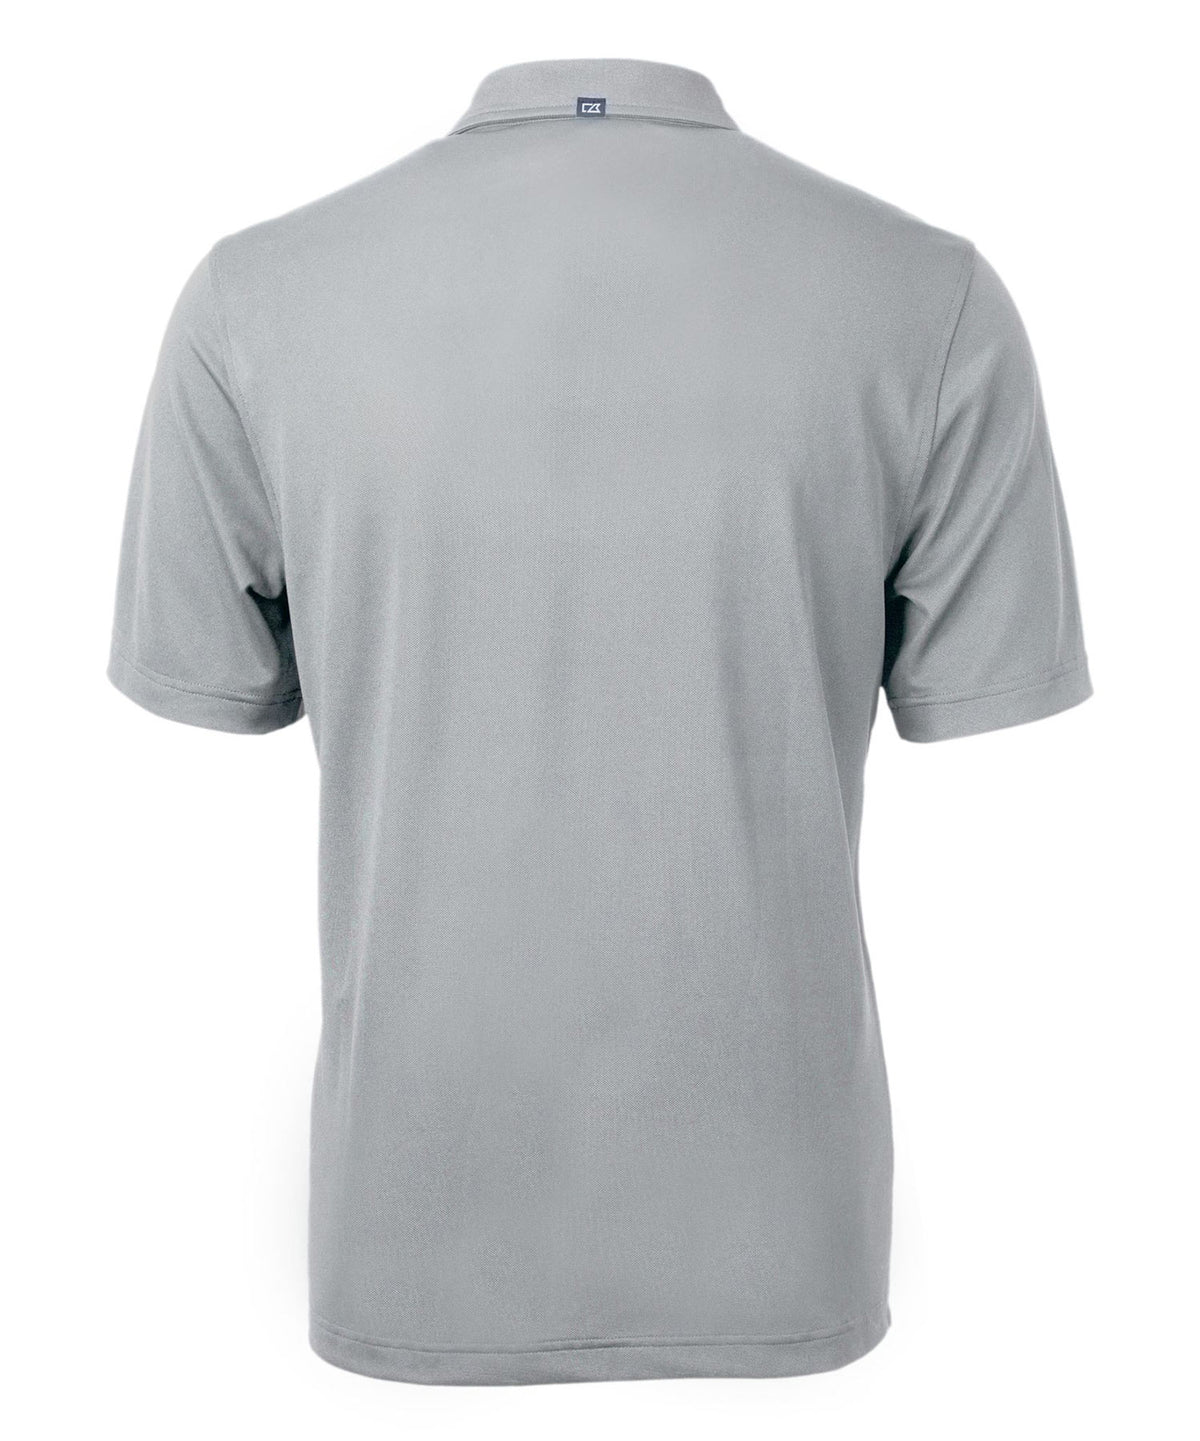 Cutter & Buck Clemson University Tigers Short Sleeve Polo Knit Shirt, Men's Big & Tall